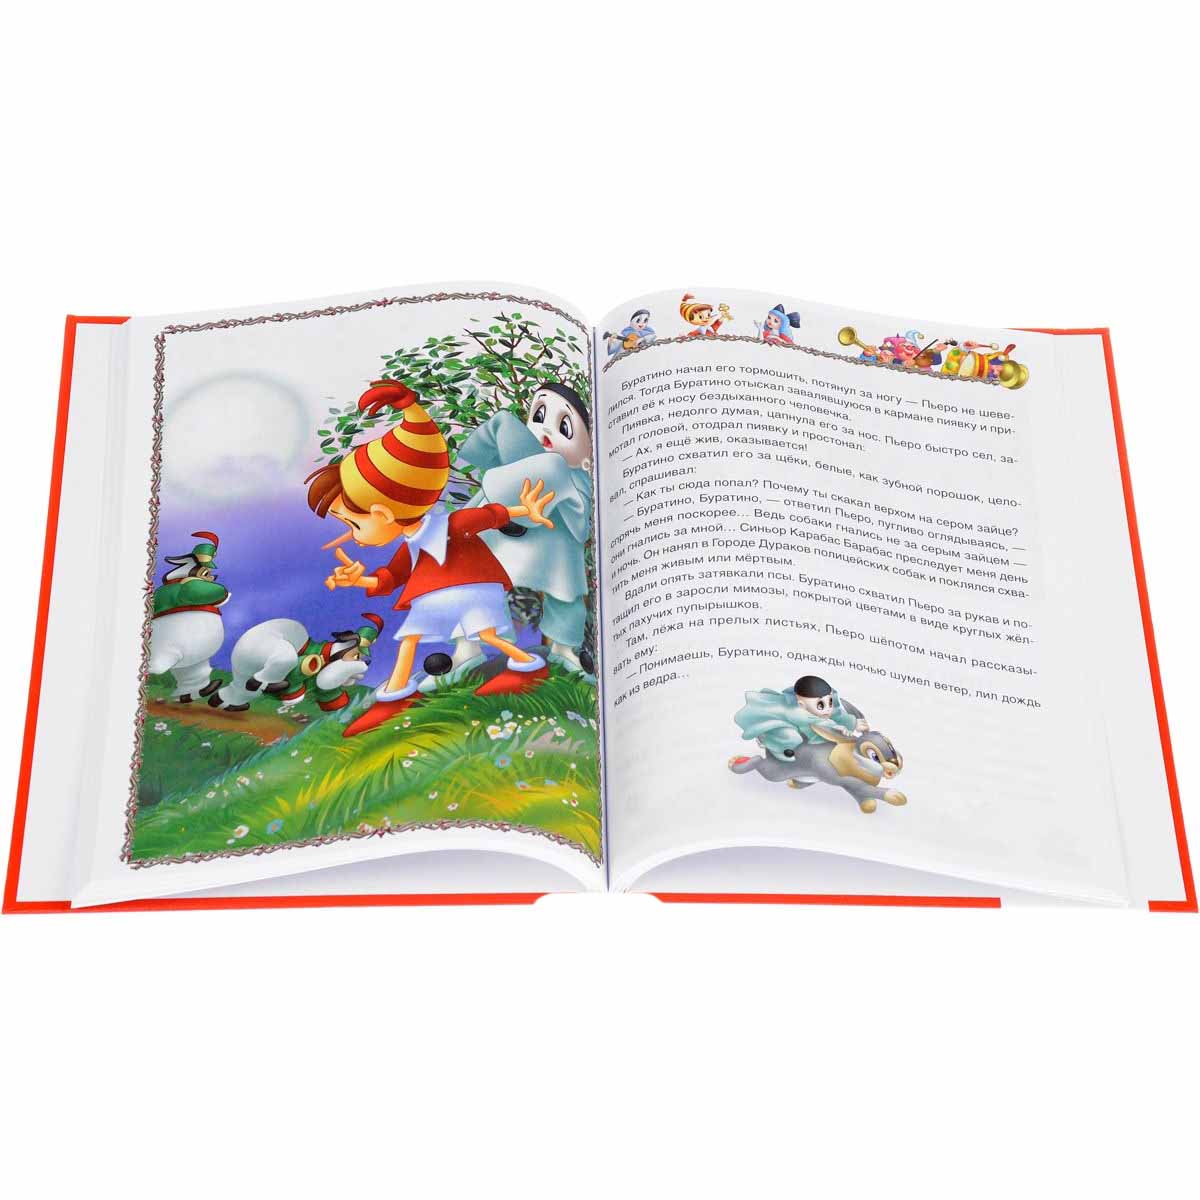 Книга из серии Детская библиотека – Золотой ключик или Приключения Буратино  